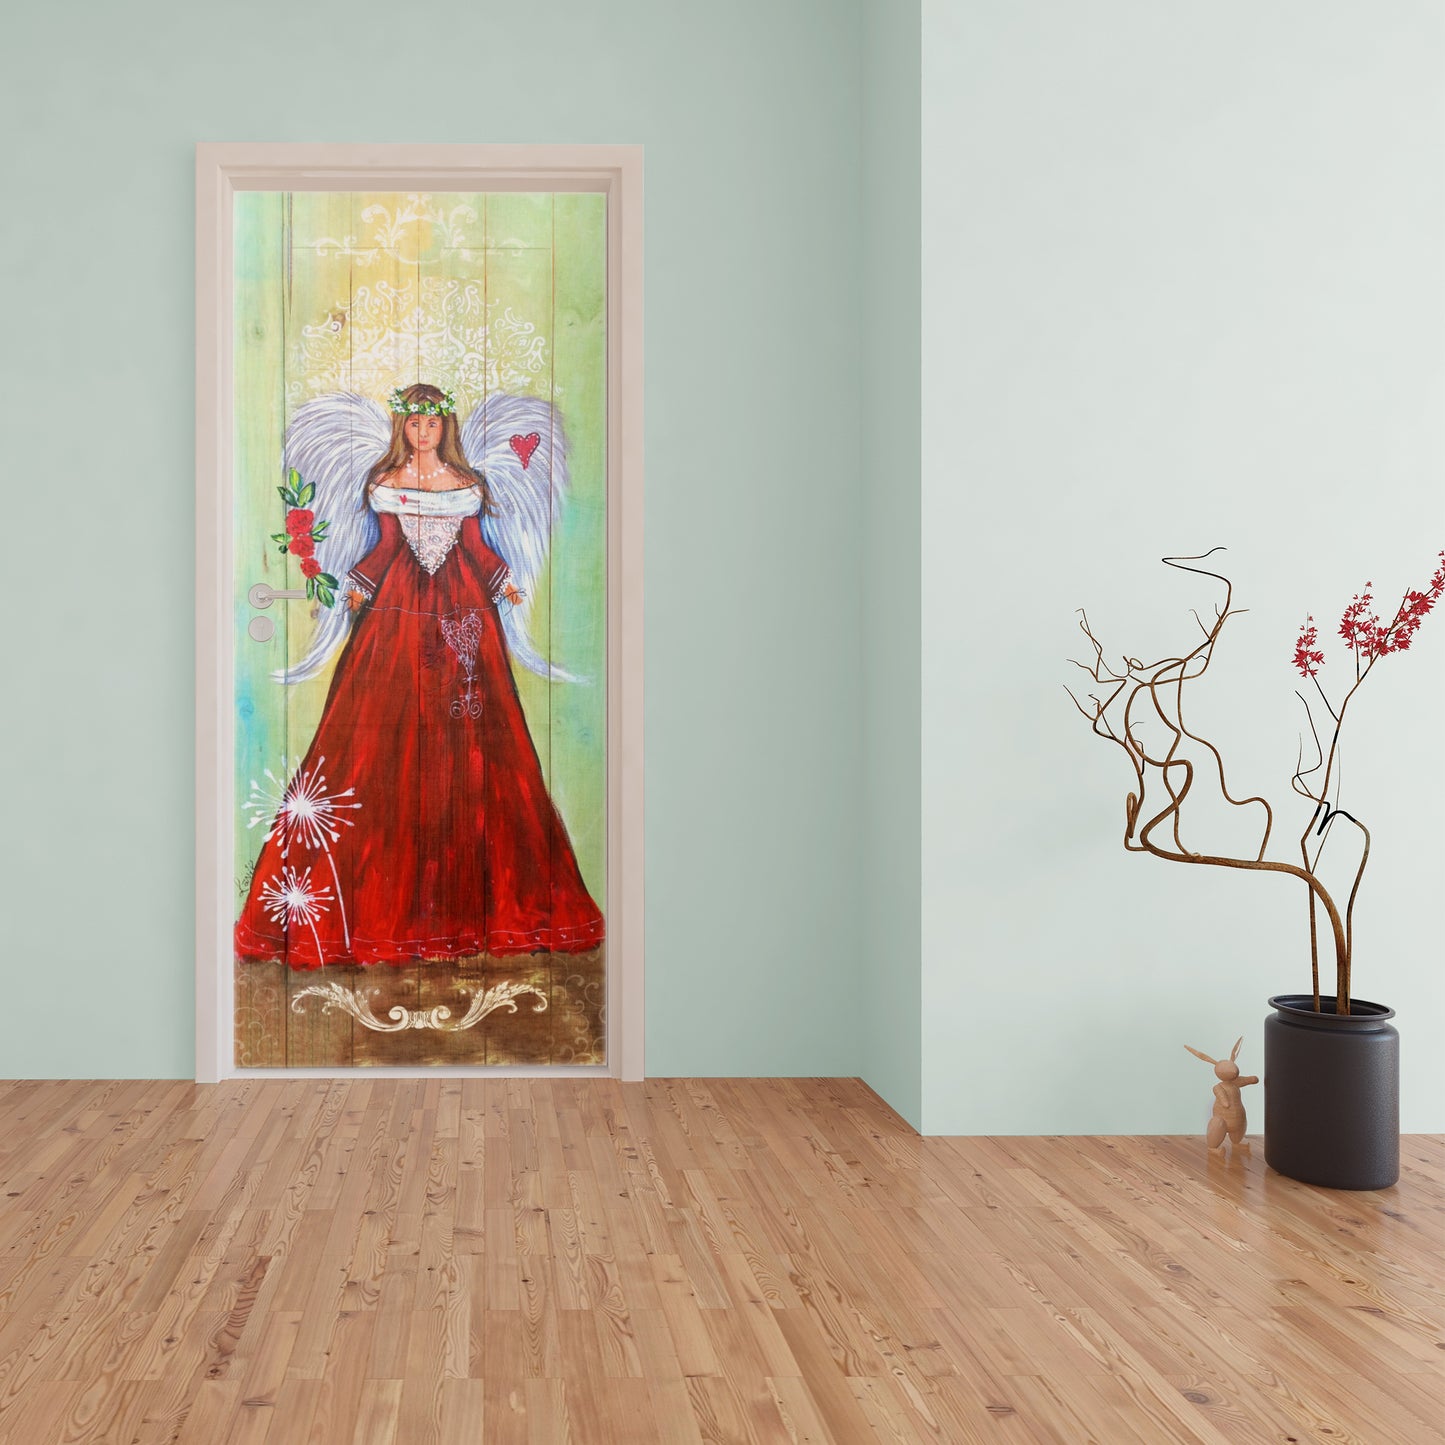 Dandelion Heart Decoupage by Lanie's Art (800mm x 2000mm - Door)